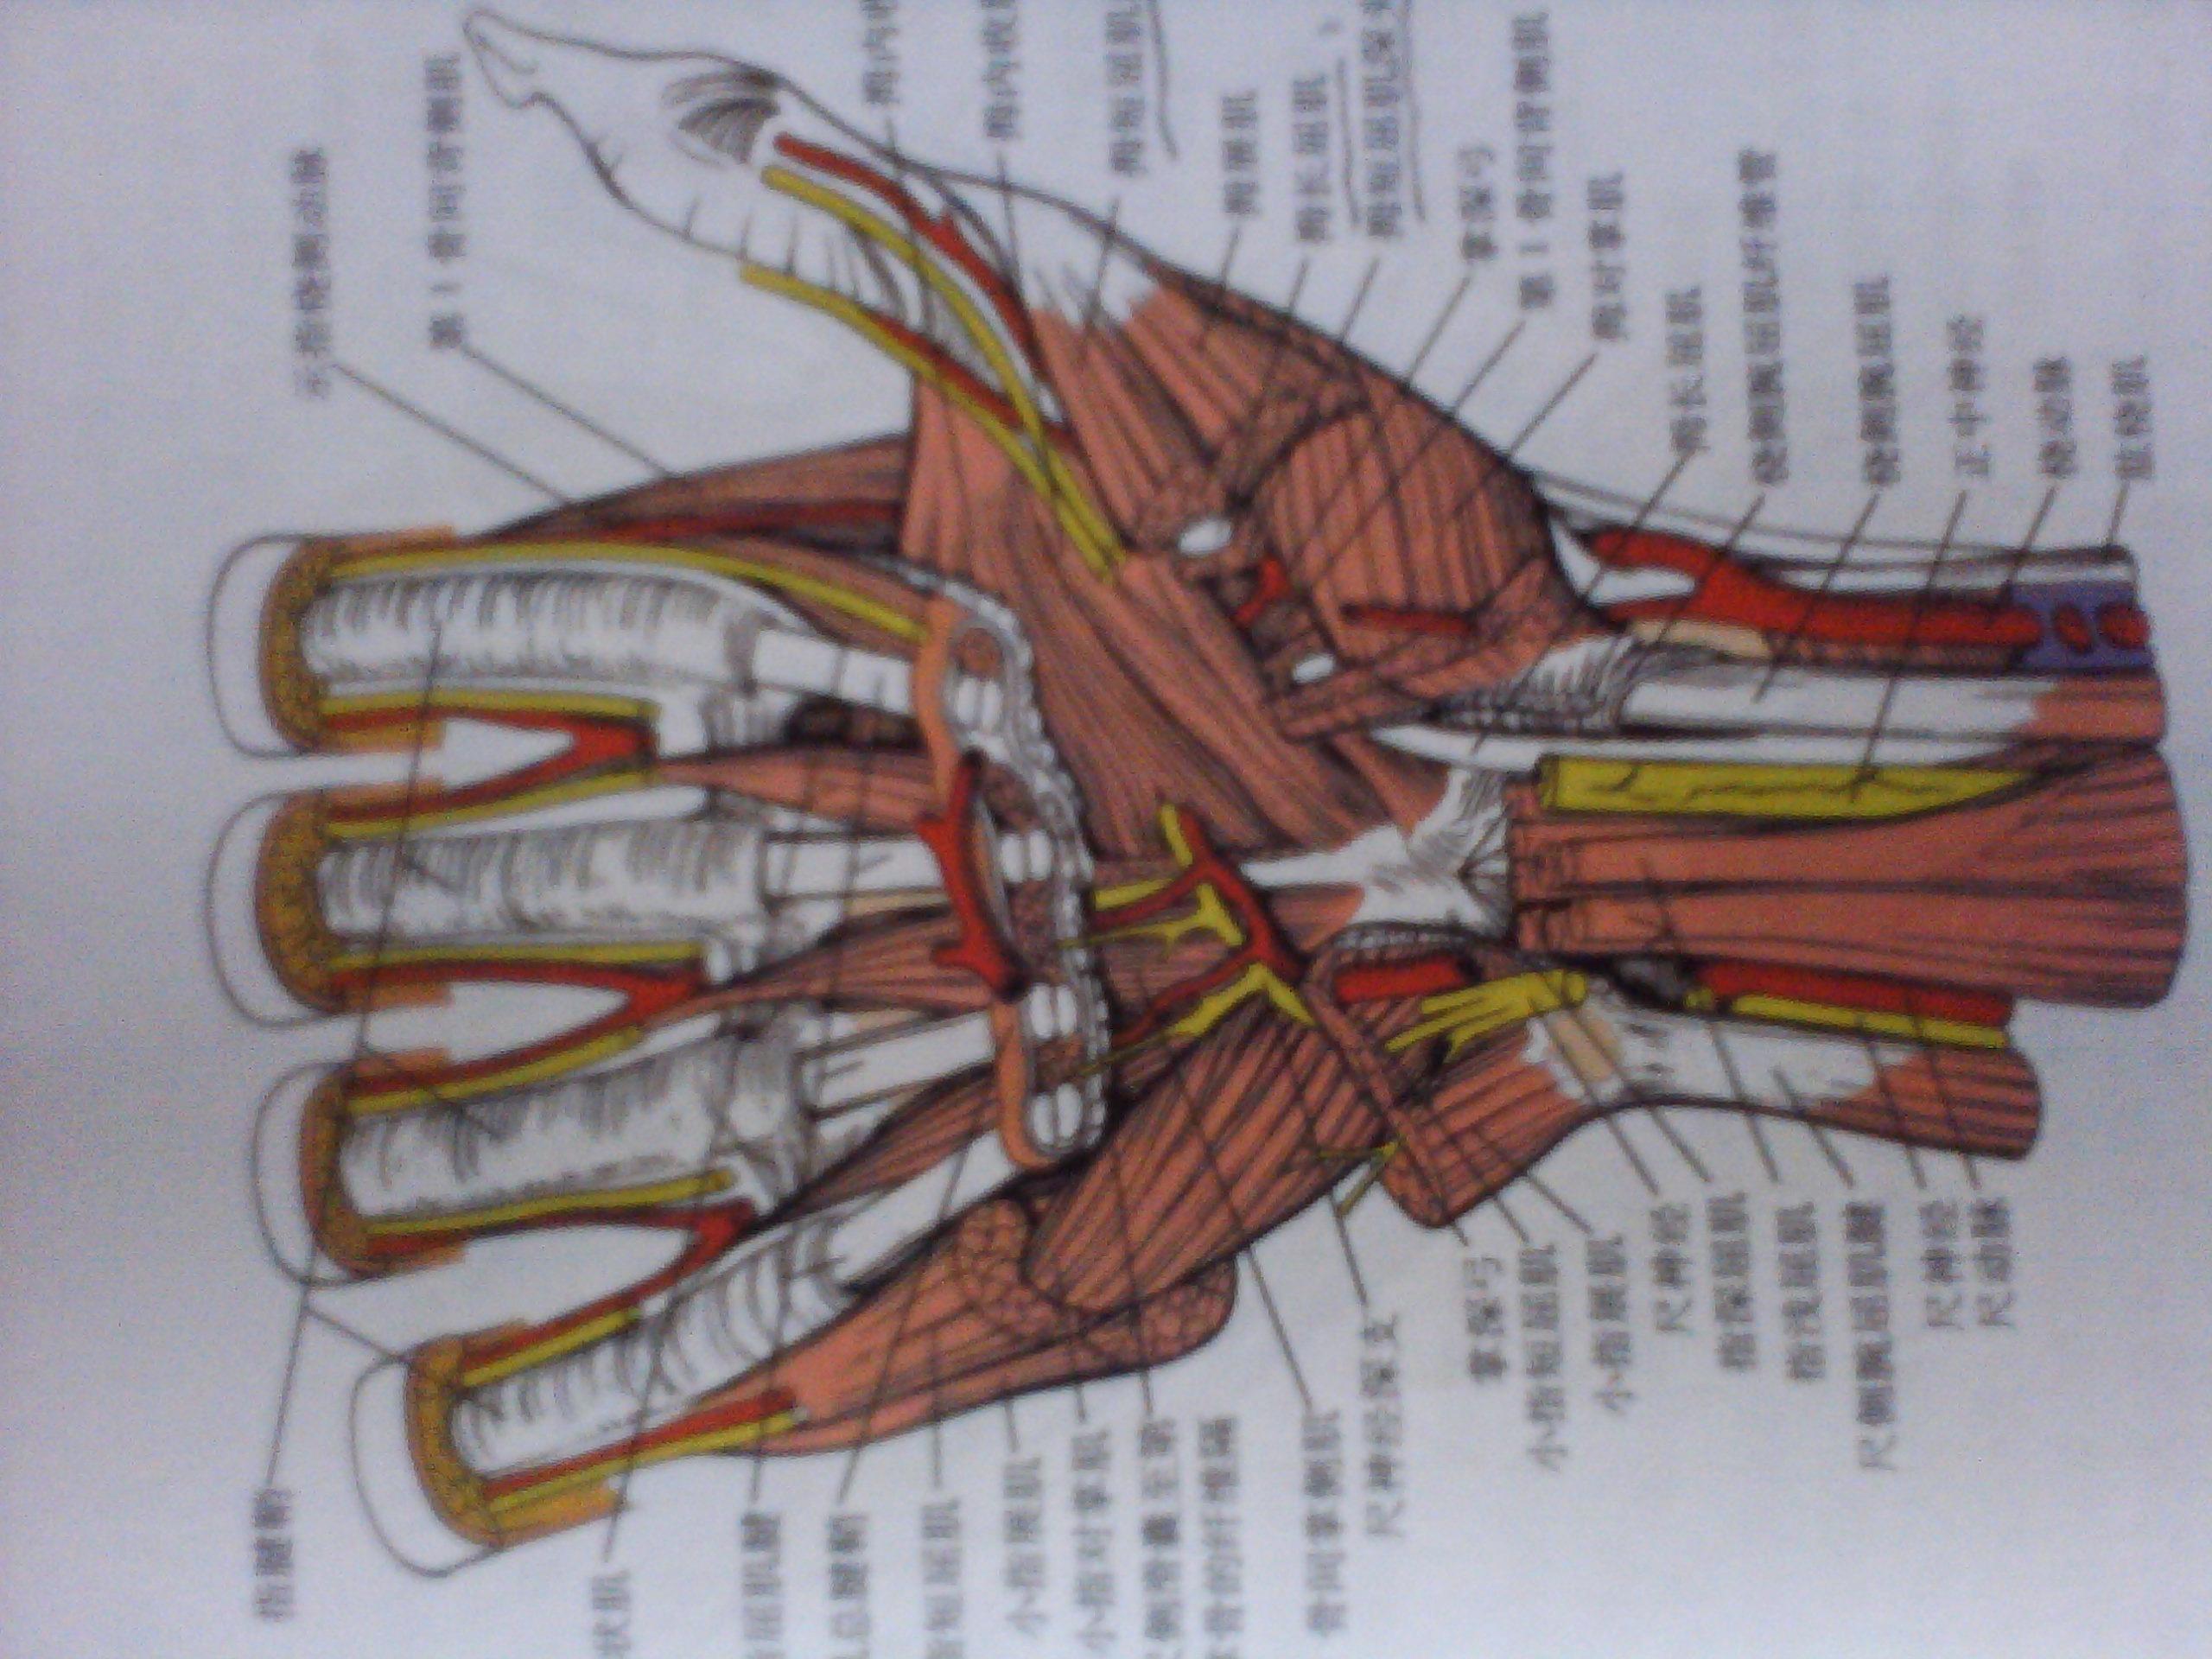 手指韧带图片 解剖图图片